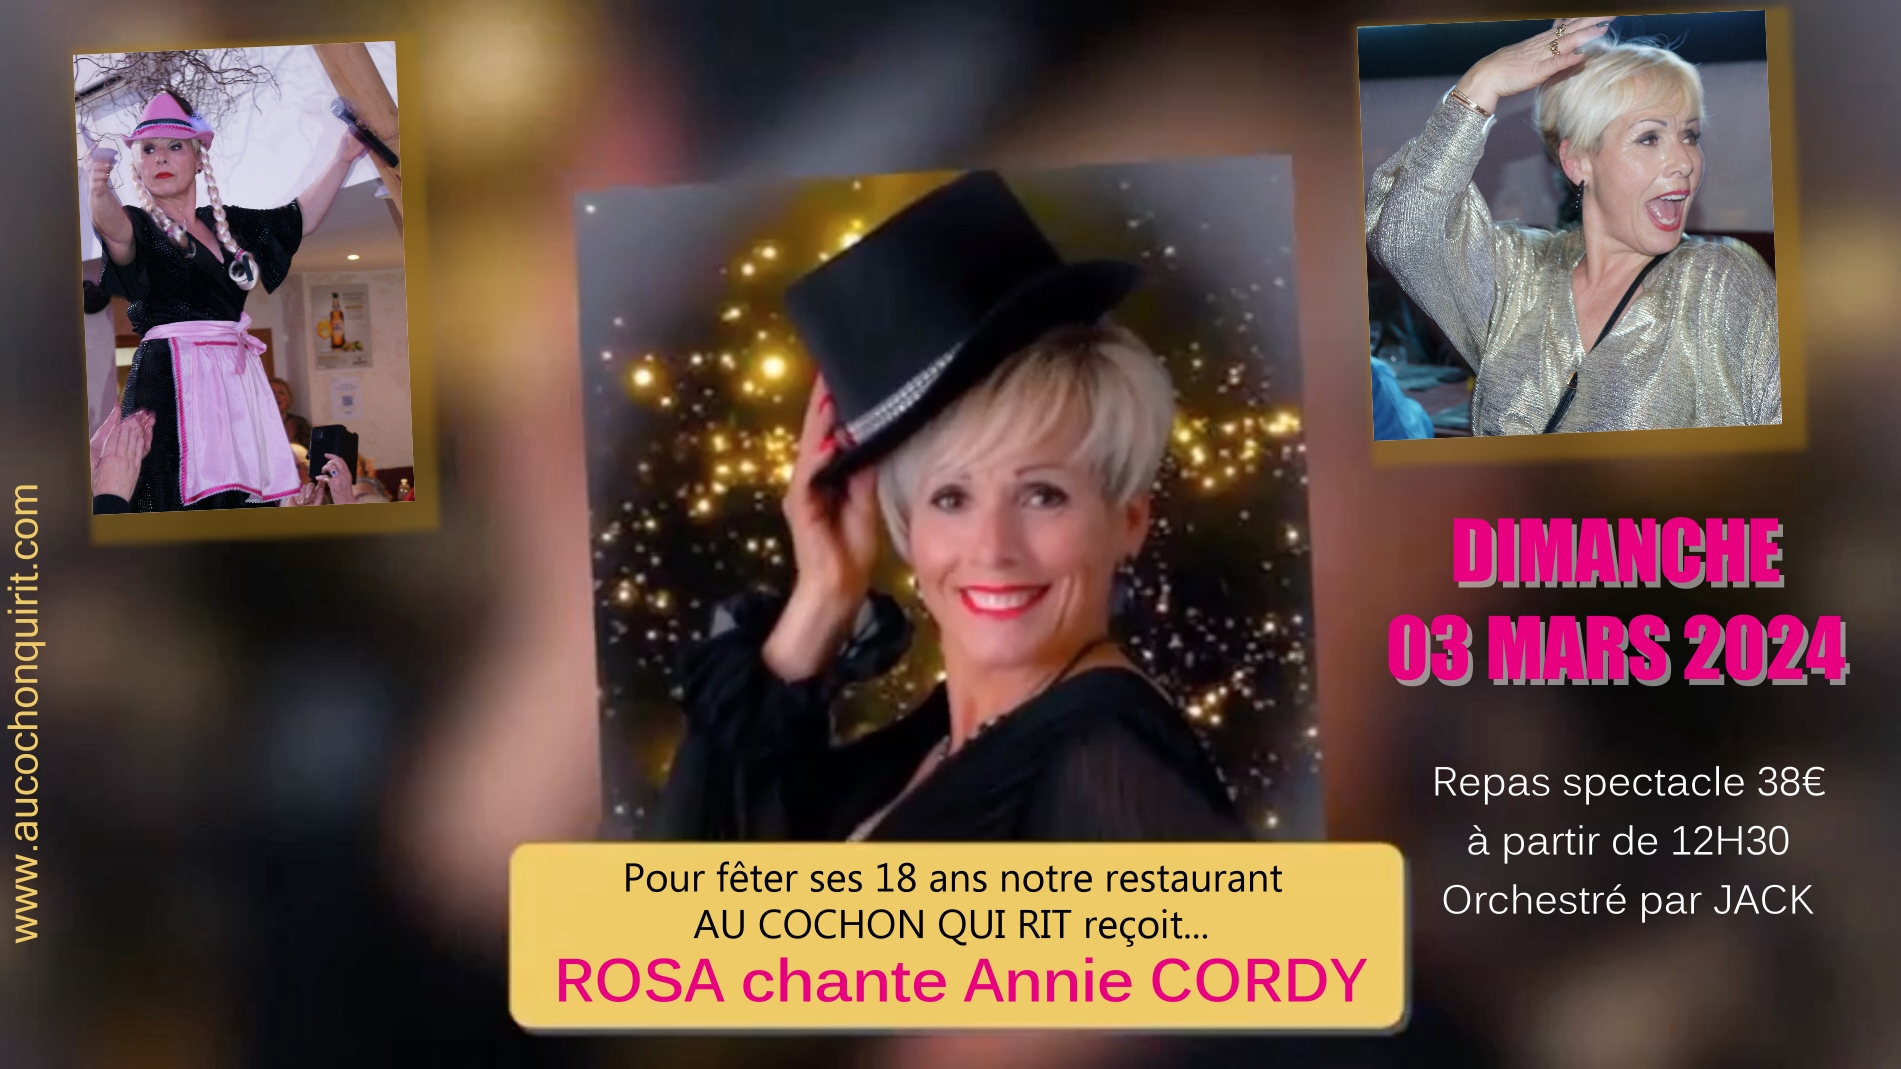 Dimanche 03 mars 2024 / anniversaire du cochon qui rit 18 ans / repas spectacle ROSA chante Annie CORDY